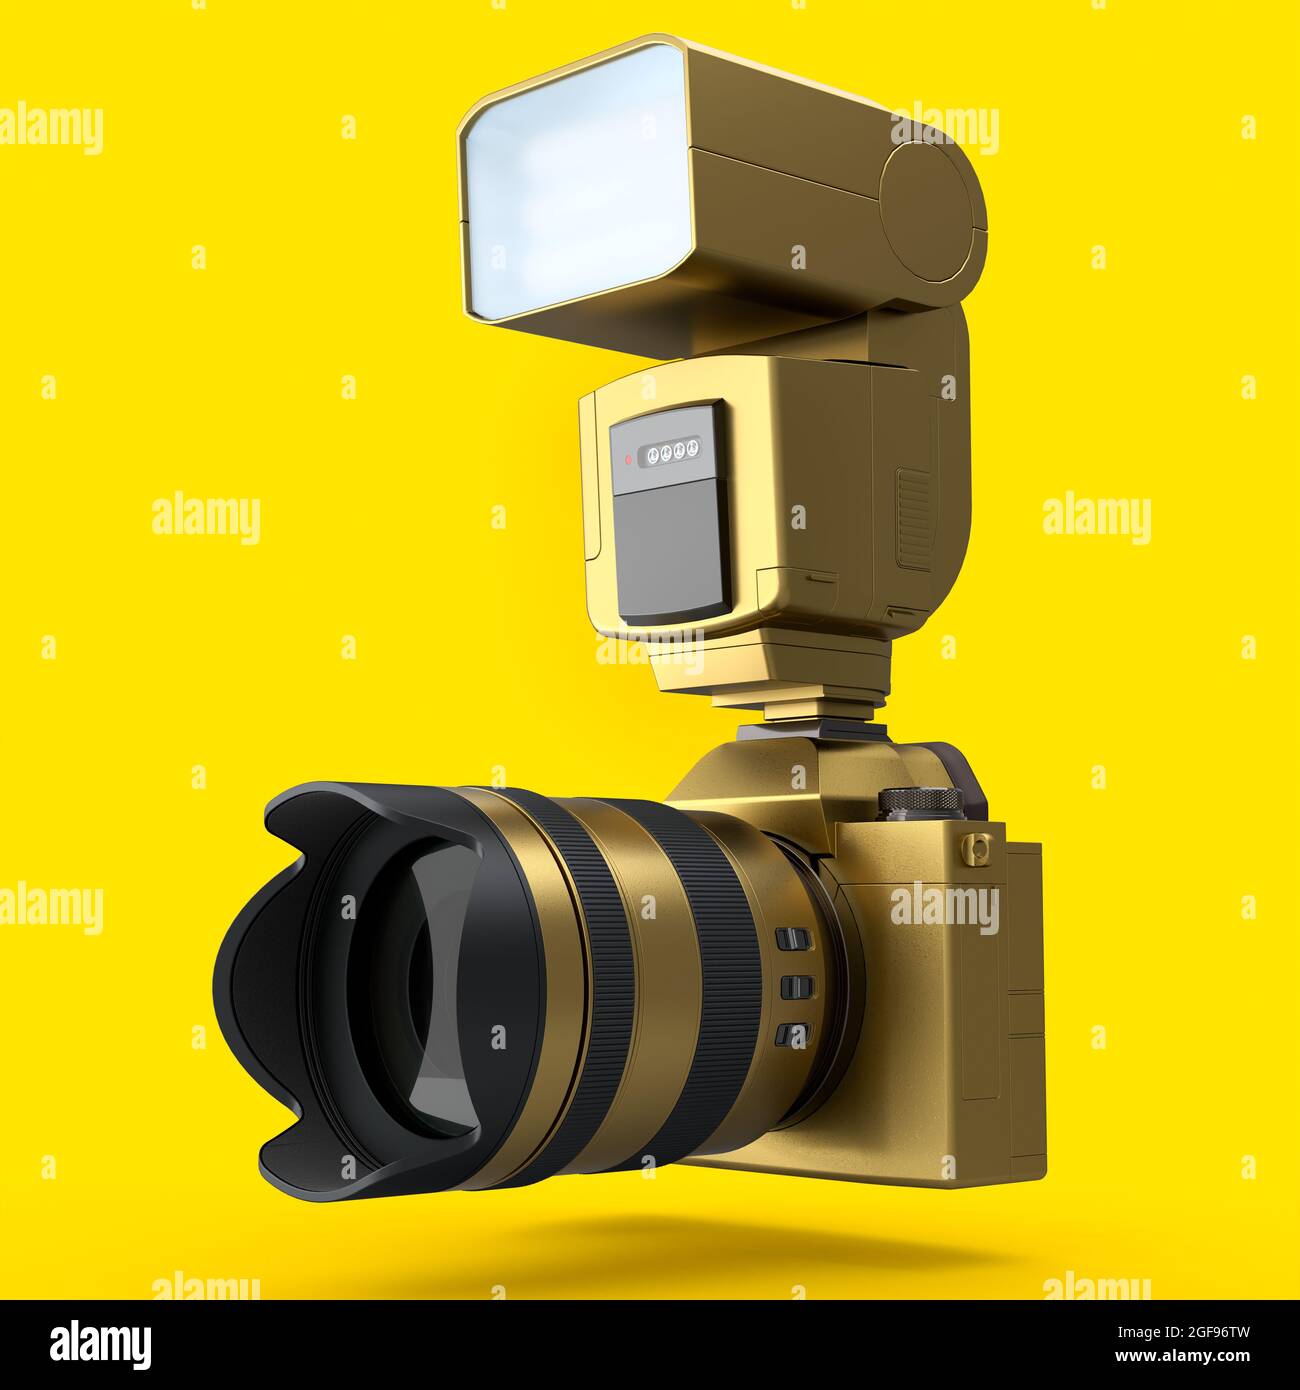 Concetto di oro inesistente DSLR fotocamera con obiettivo e flash esterno speedlight isolato su sfondo giallo. Rendering 3D di fotografie professionali Foto Stock